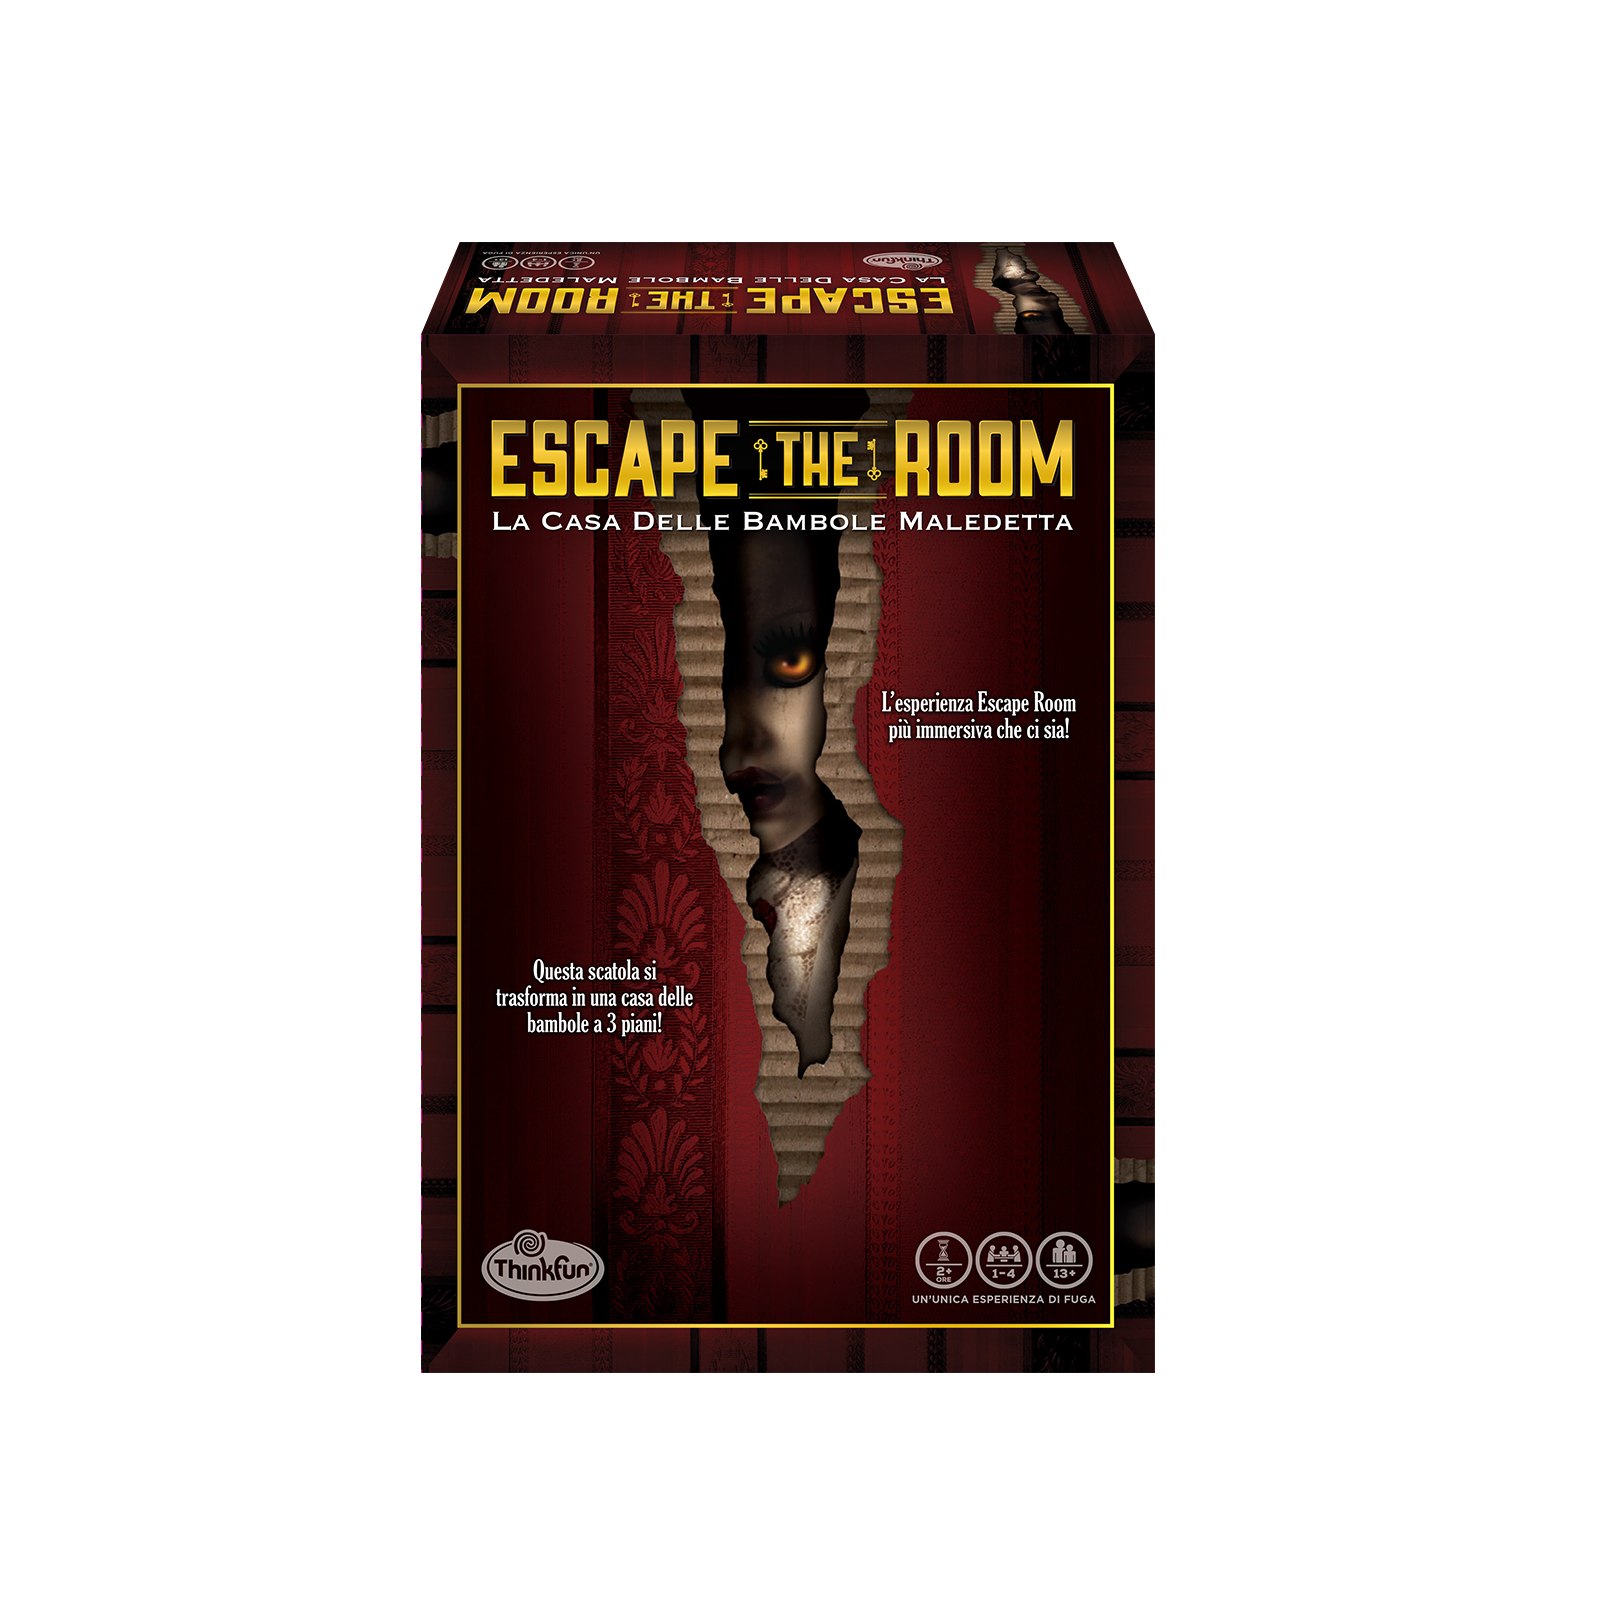 Thinkfun - escape the room "la casa delle bambole maledetta", gioco da tavolo, da 1 a 4 giocatori, 13+ anni - RAVENSBURGER